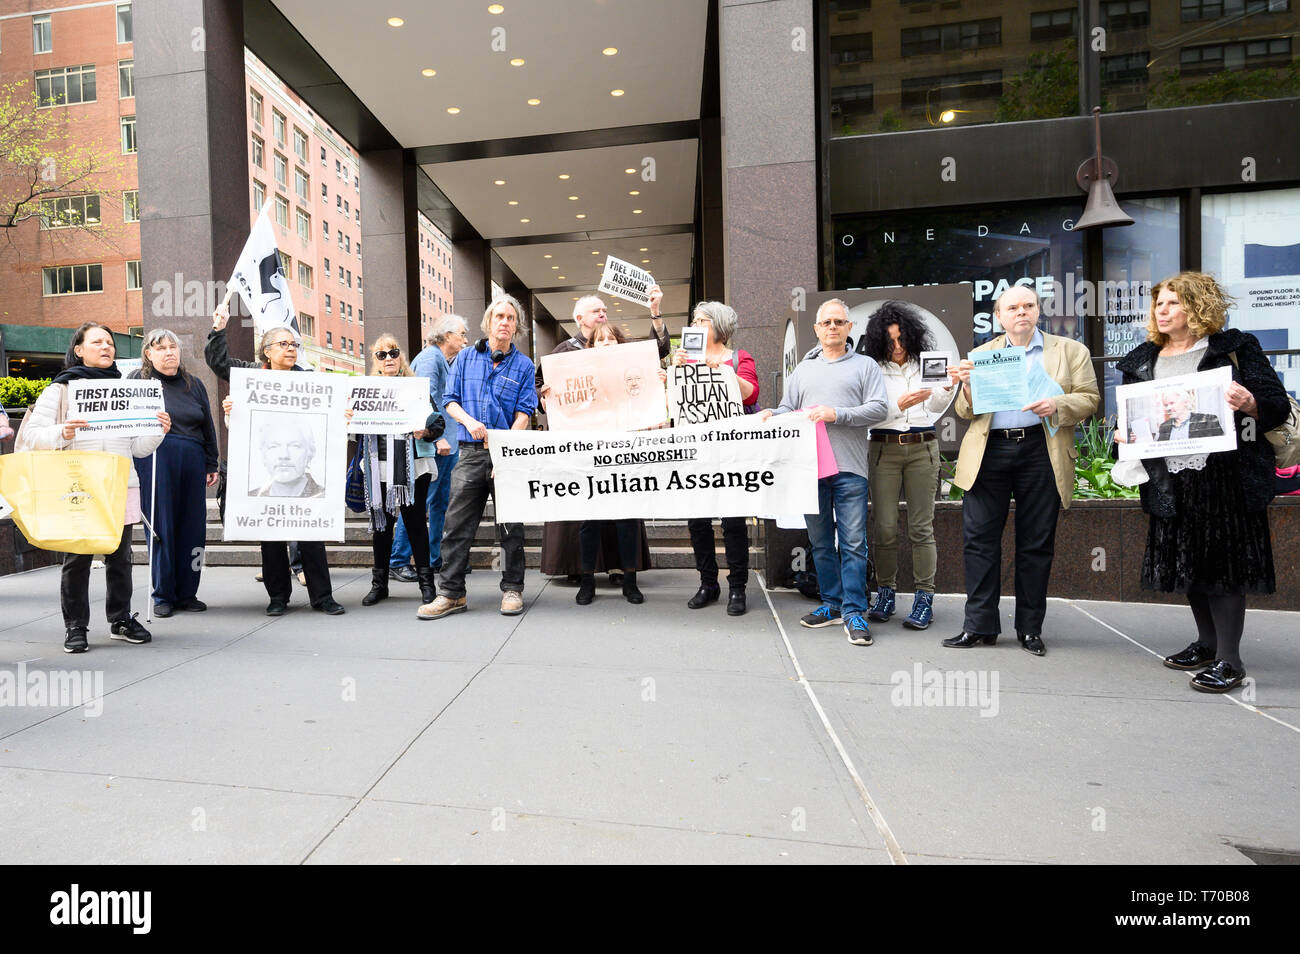 Demonstranten mit Plakaten und Fahnen gesehen während einer Kundgebung zur Unterstützung von Julian Assange vor dem britischen Konsulat in New York City statt. Stockfoto